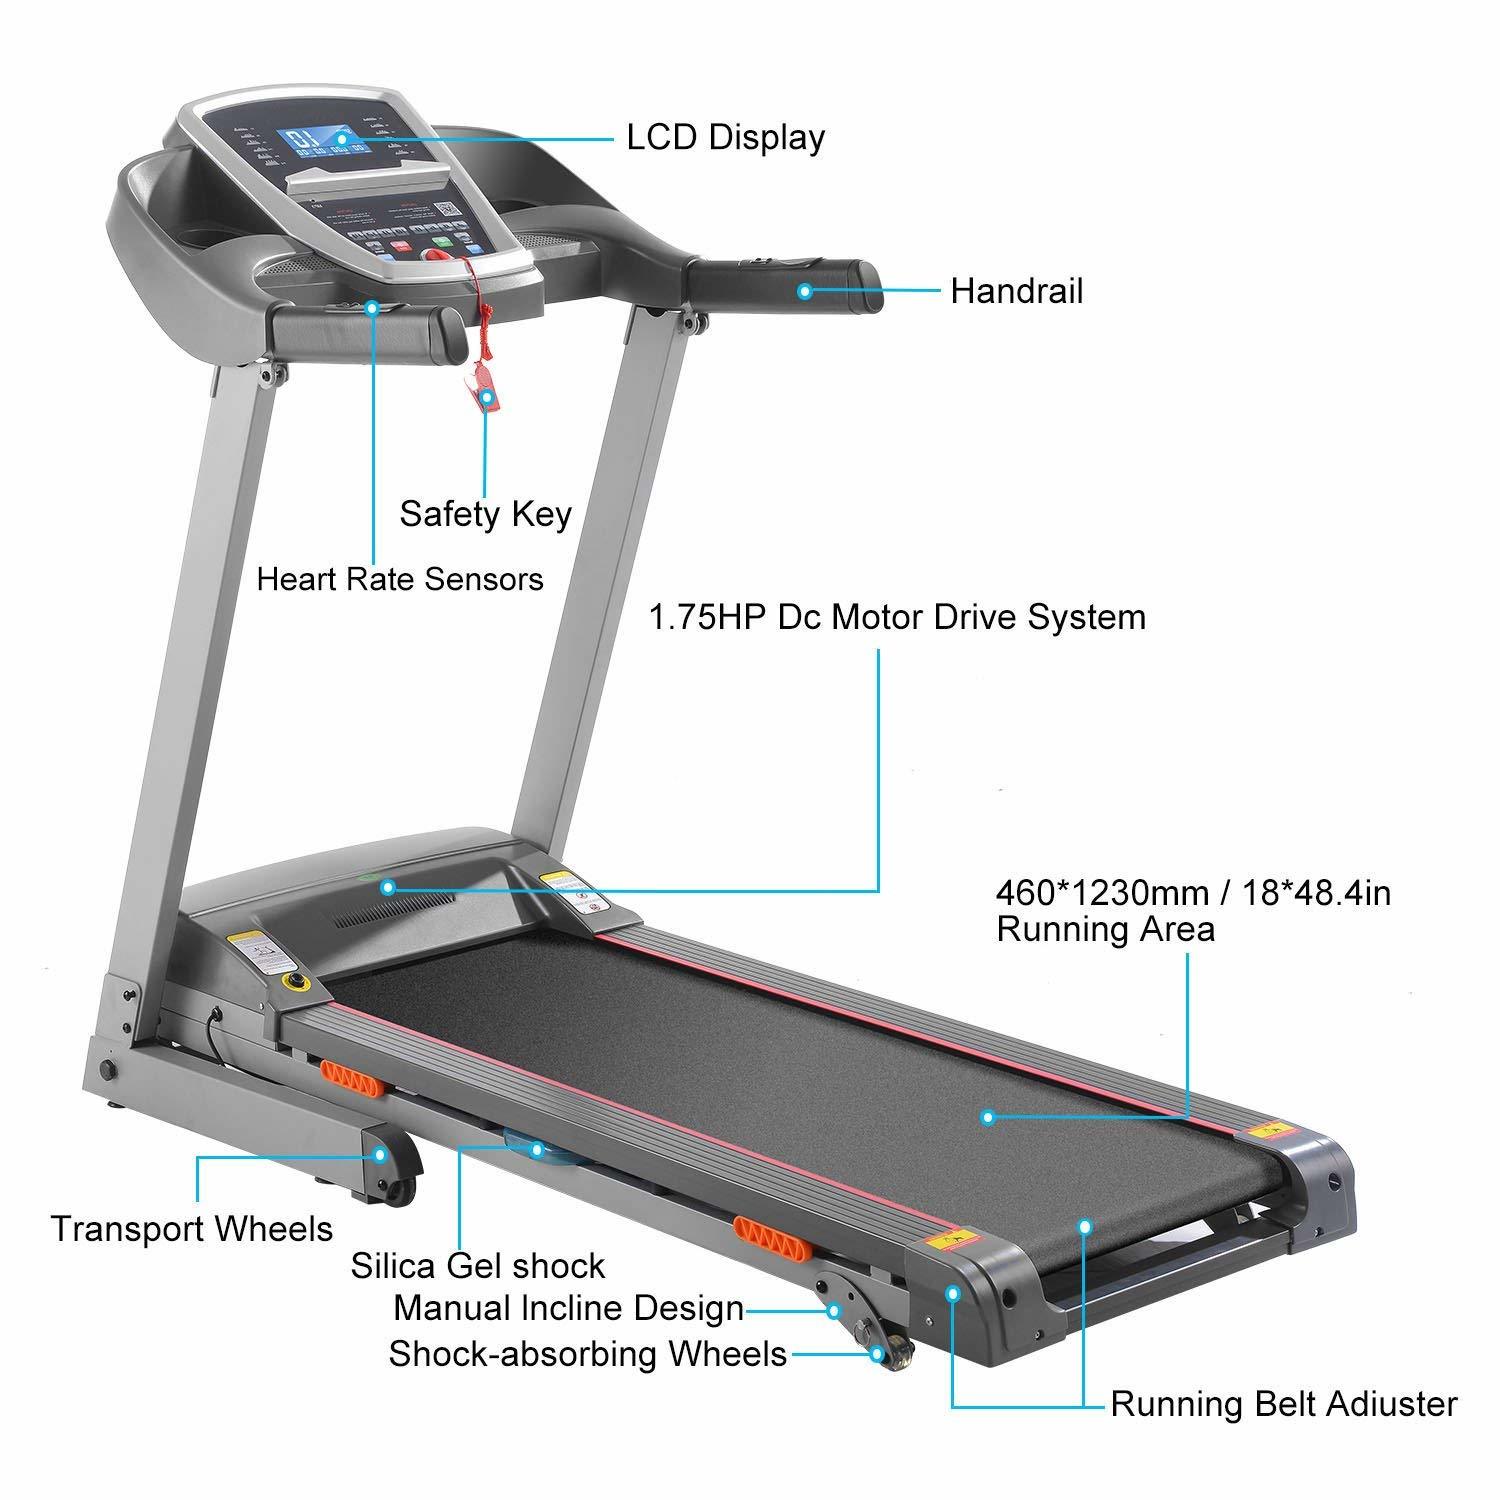 10 best treadmills under $500 & $1000 for home gym 13